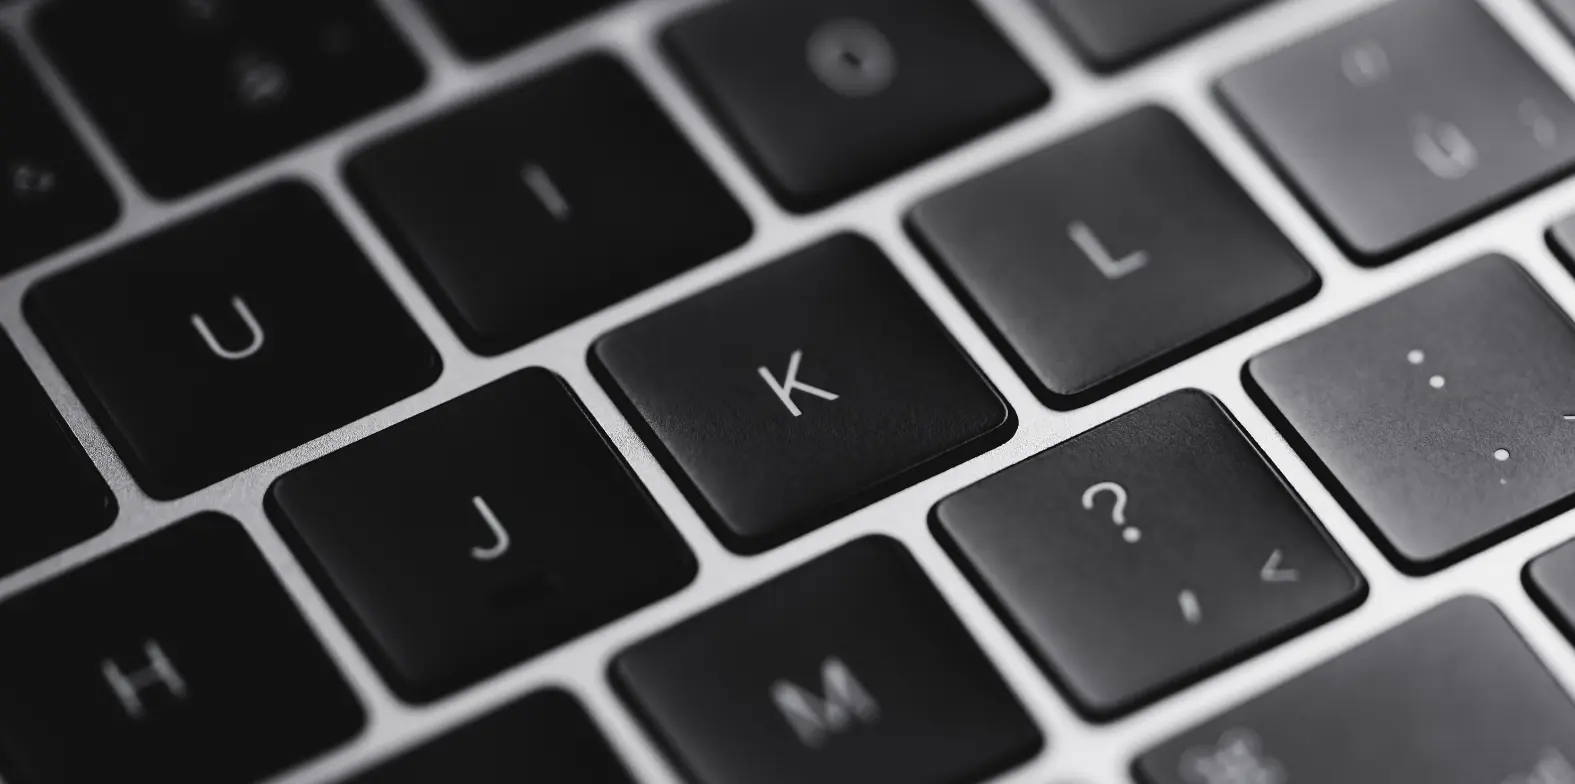 Czarny laptop, klawiatura, przyciski "J", "K", "L".